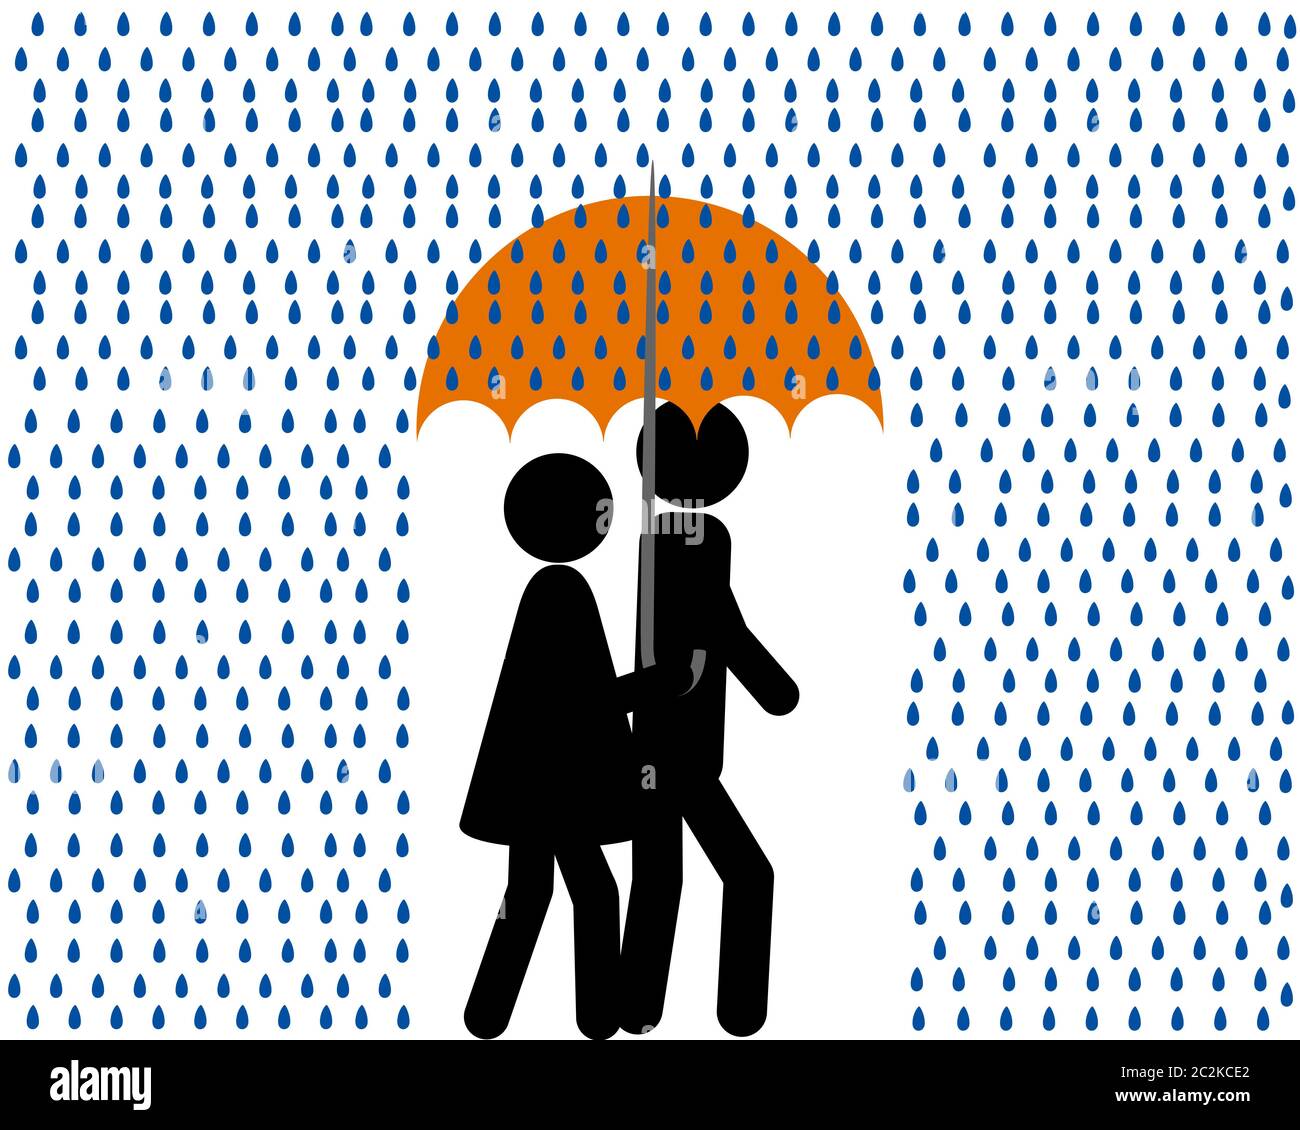 Mann und Frau mit Regenschirm bei Regenschauer Stock Photo